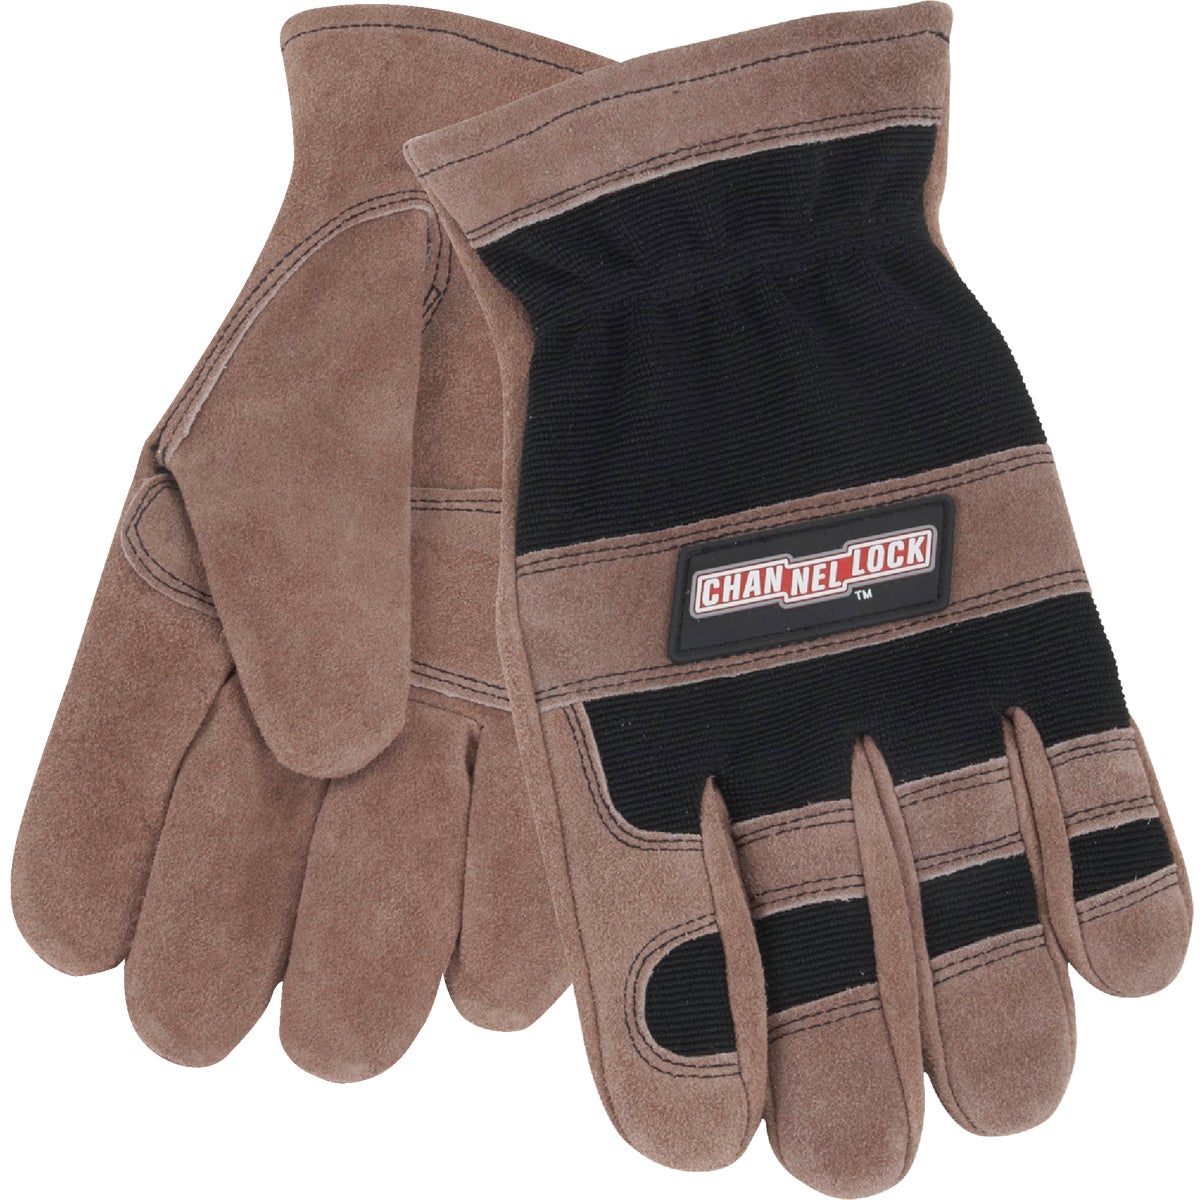 Channellock Men's XL Leather Work Glove